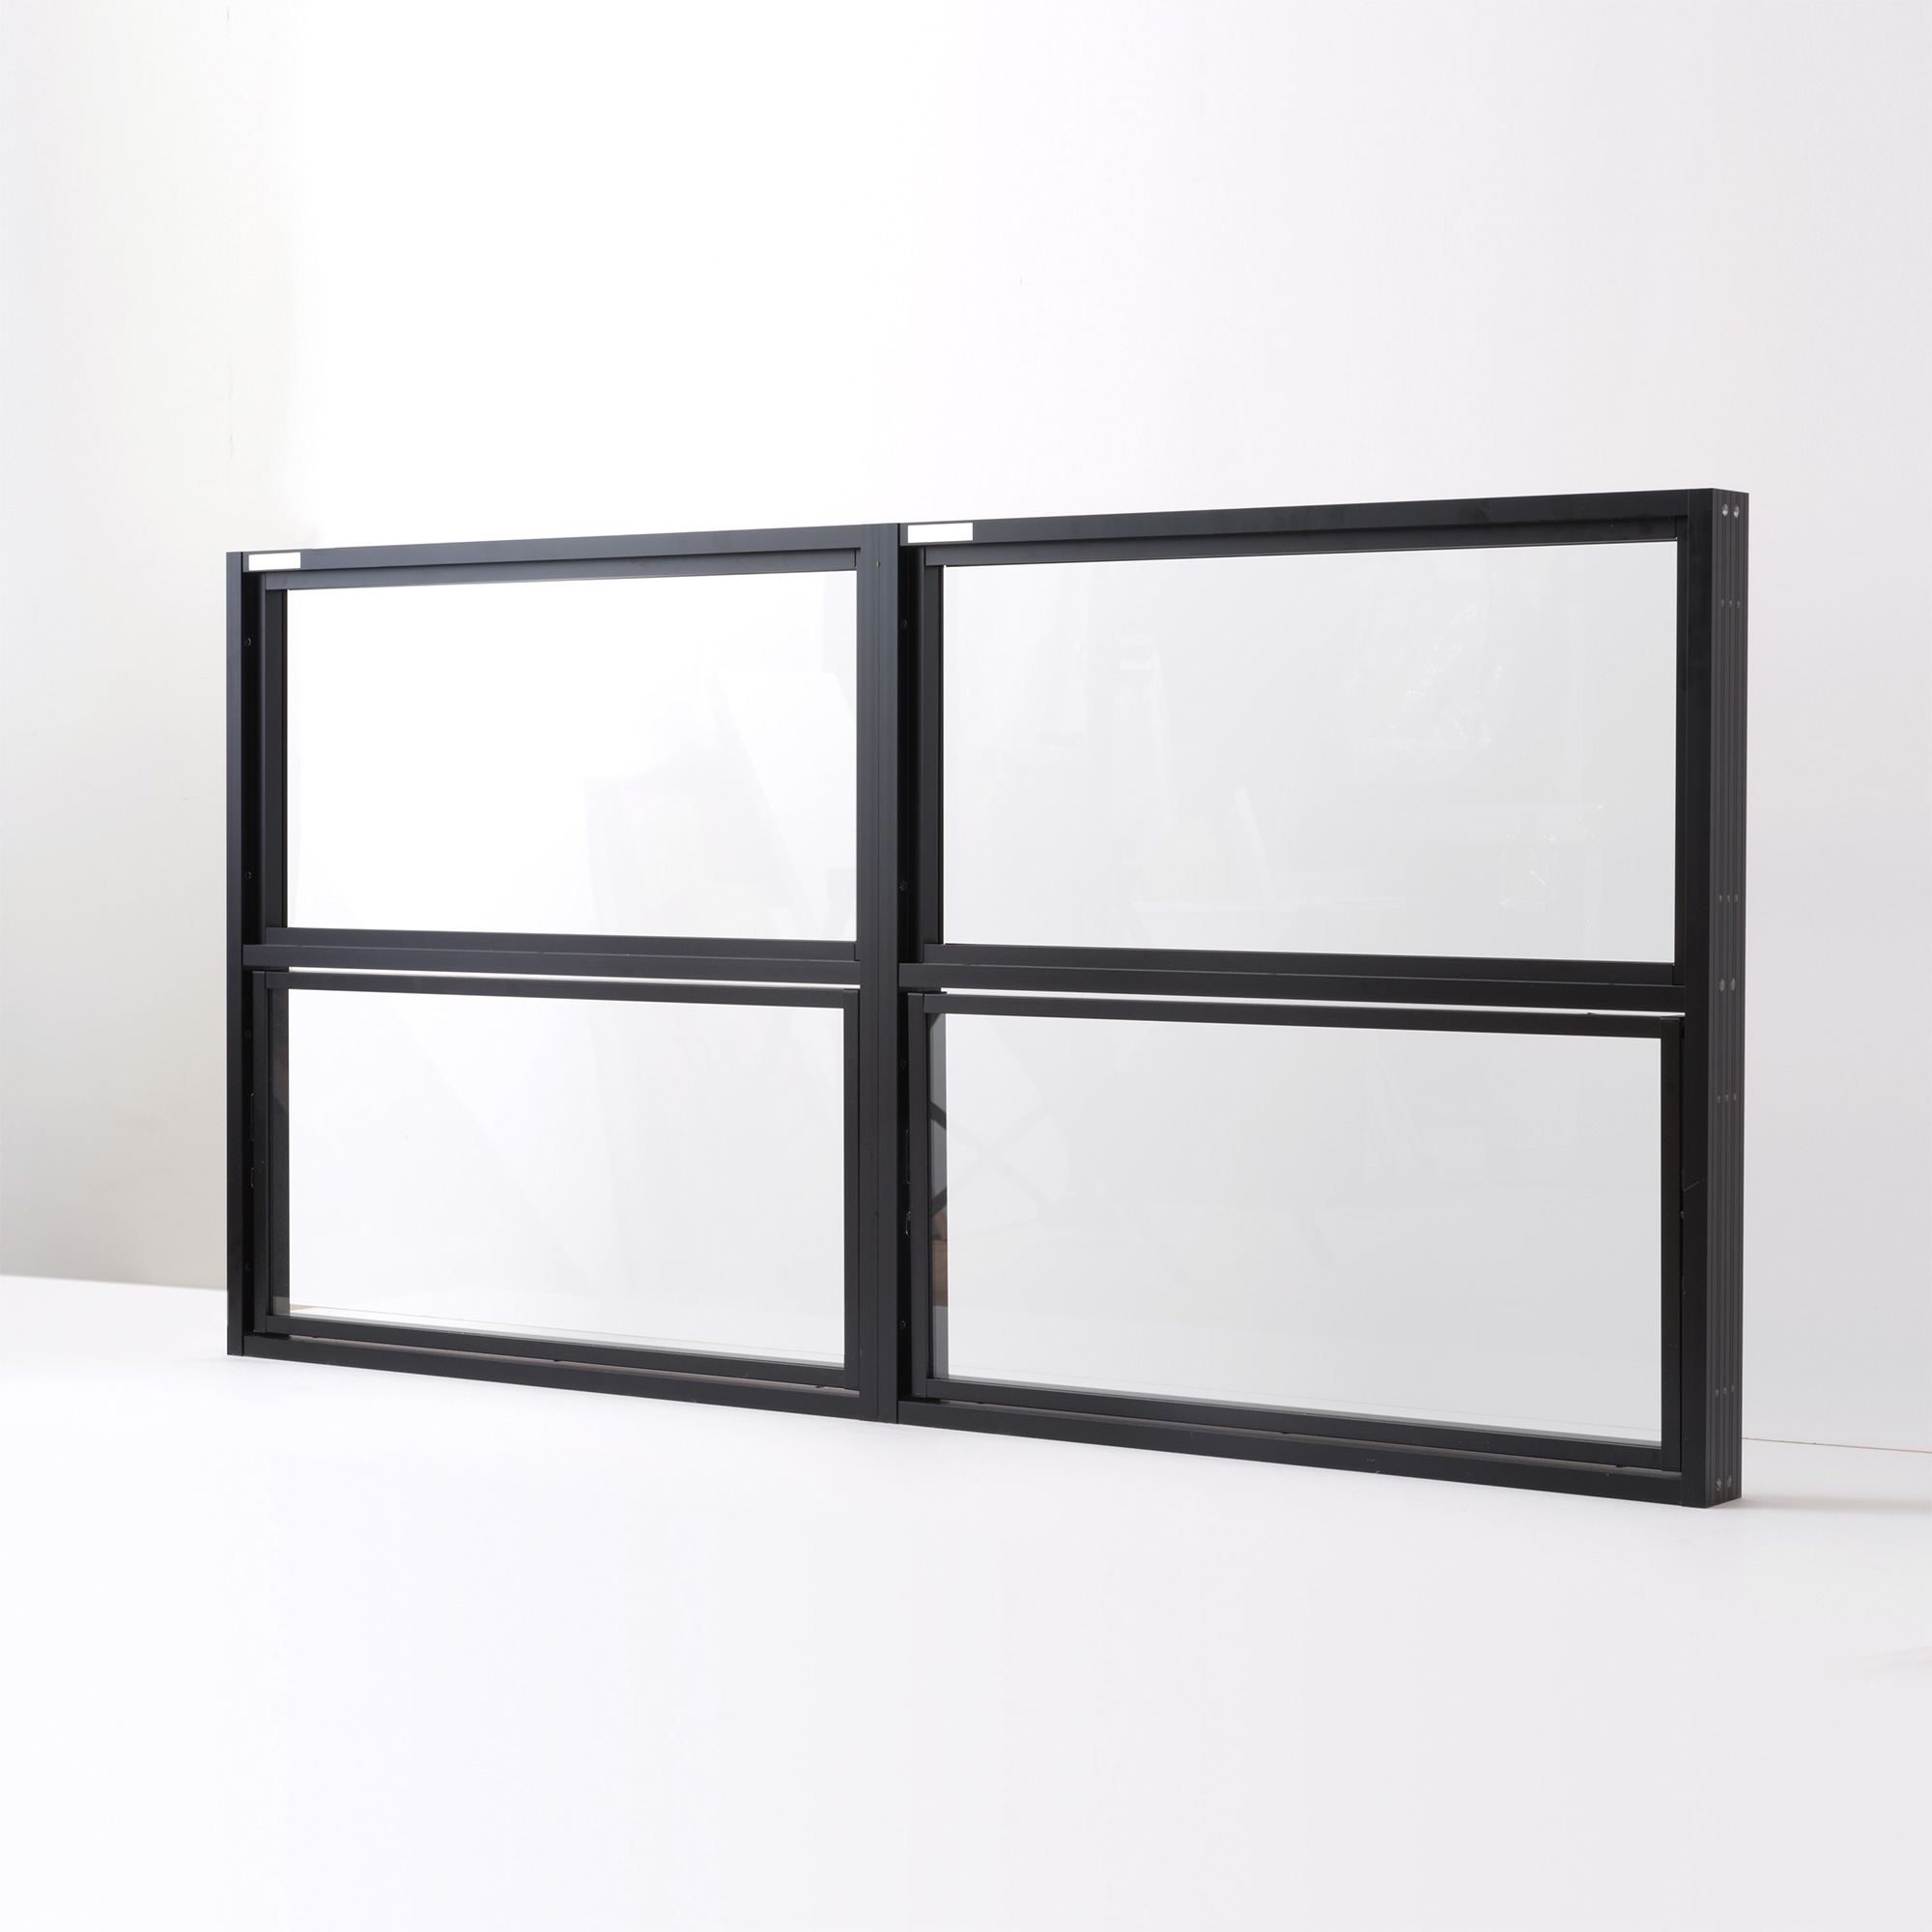 室内アルミサッシ 回転窓＋回転窓 ブラック ガラス DW-DR013-21-G201 FIX窓（上）＋回転窓（下）の2連結　W1400 H700（W700 上H350 下H350）クリアガラス